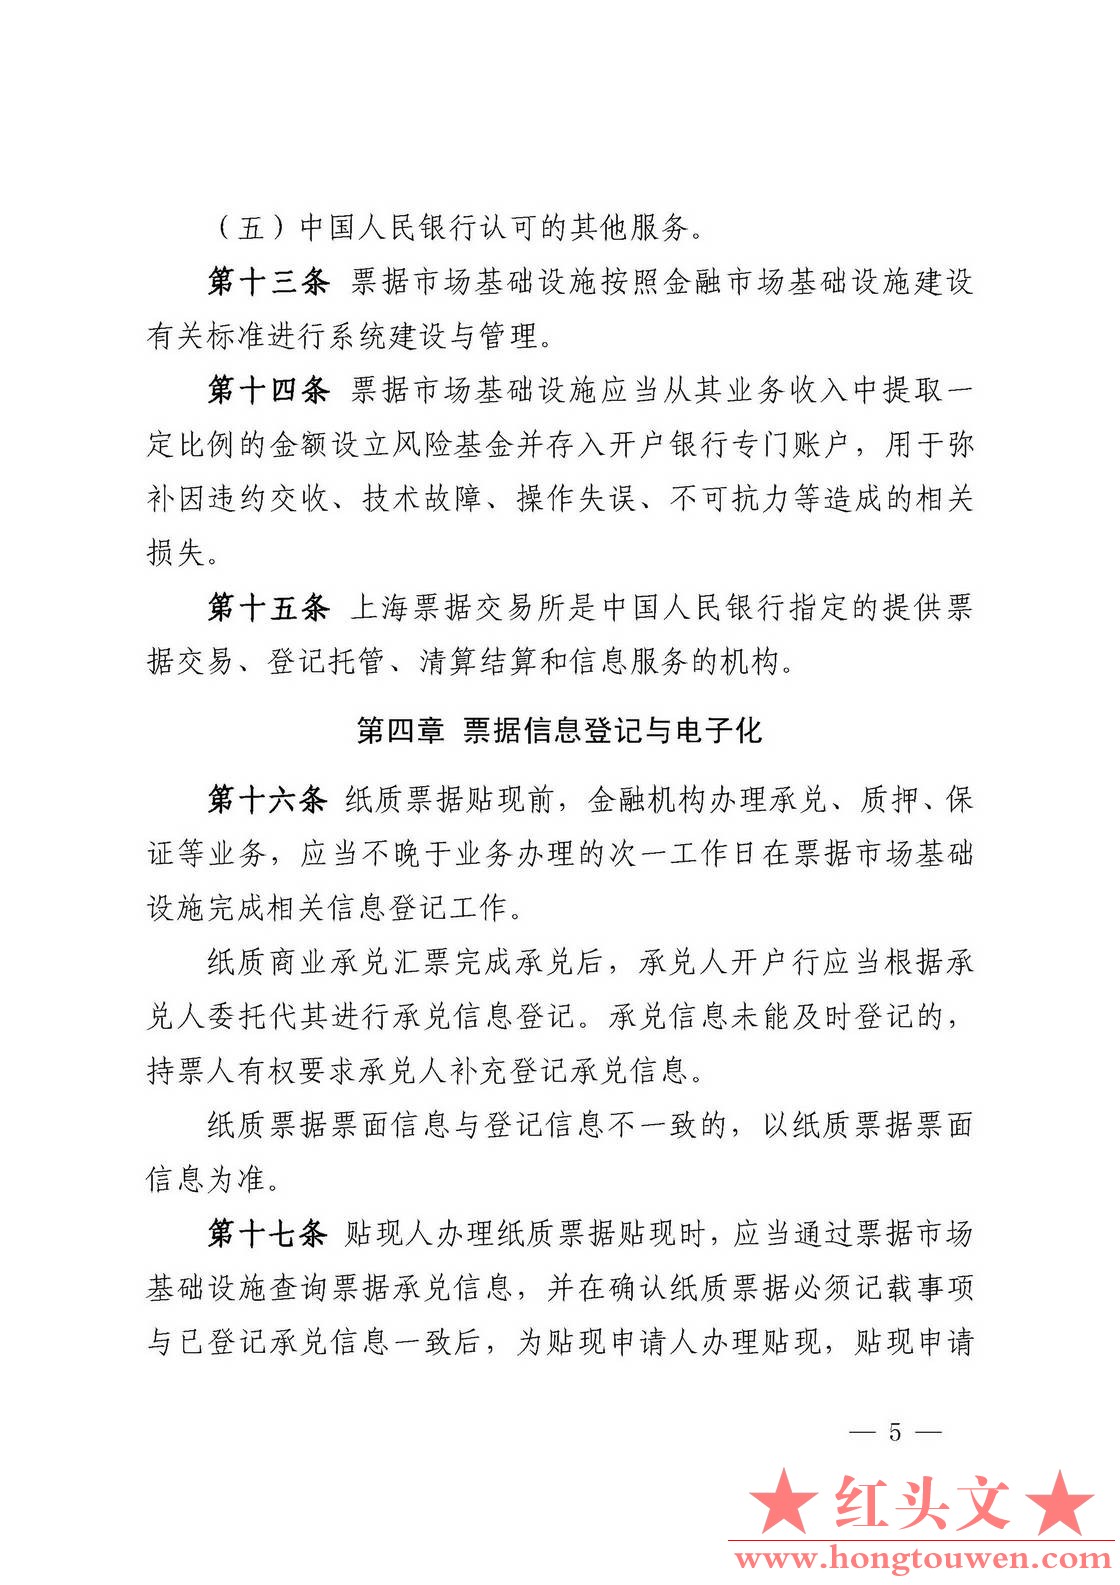 中国人民银行公告[2016]9号-票据交易管理办法_页面_05.jpg